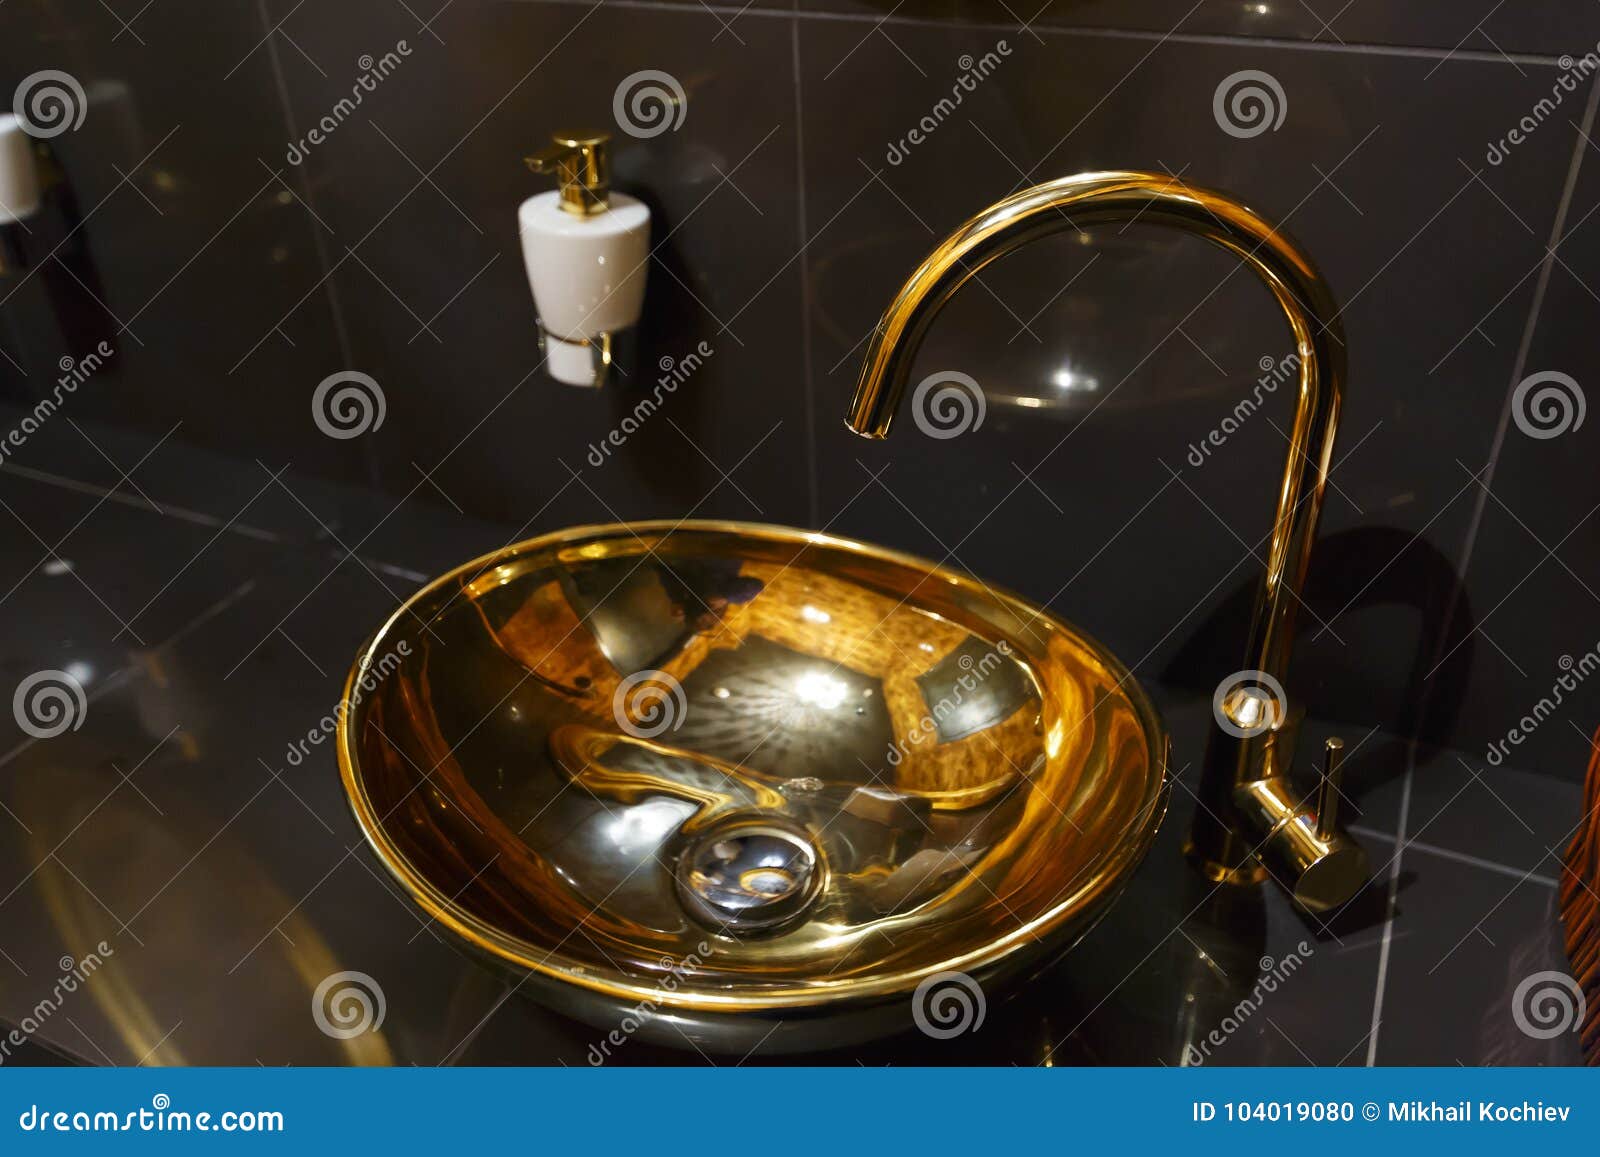 Медная раковина в кафе в туалете. Медный faucet в кафе в туалете в Финляндии